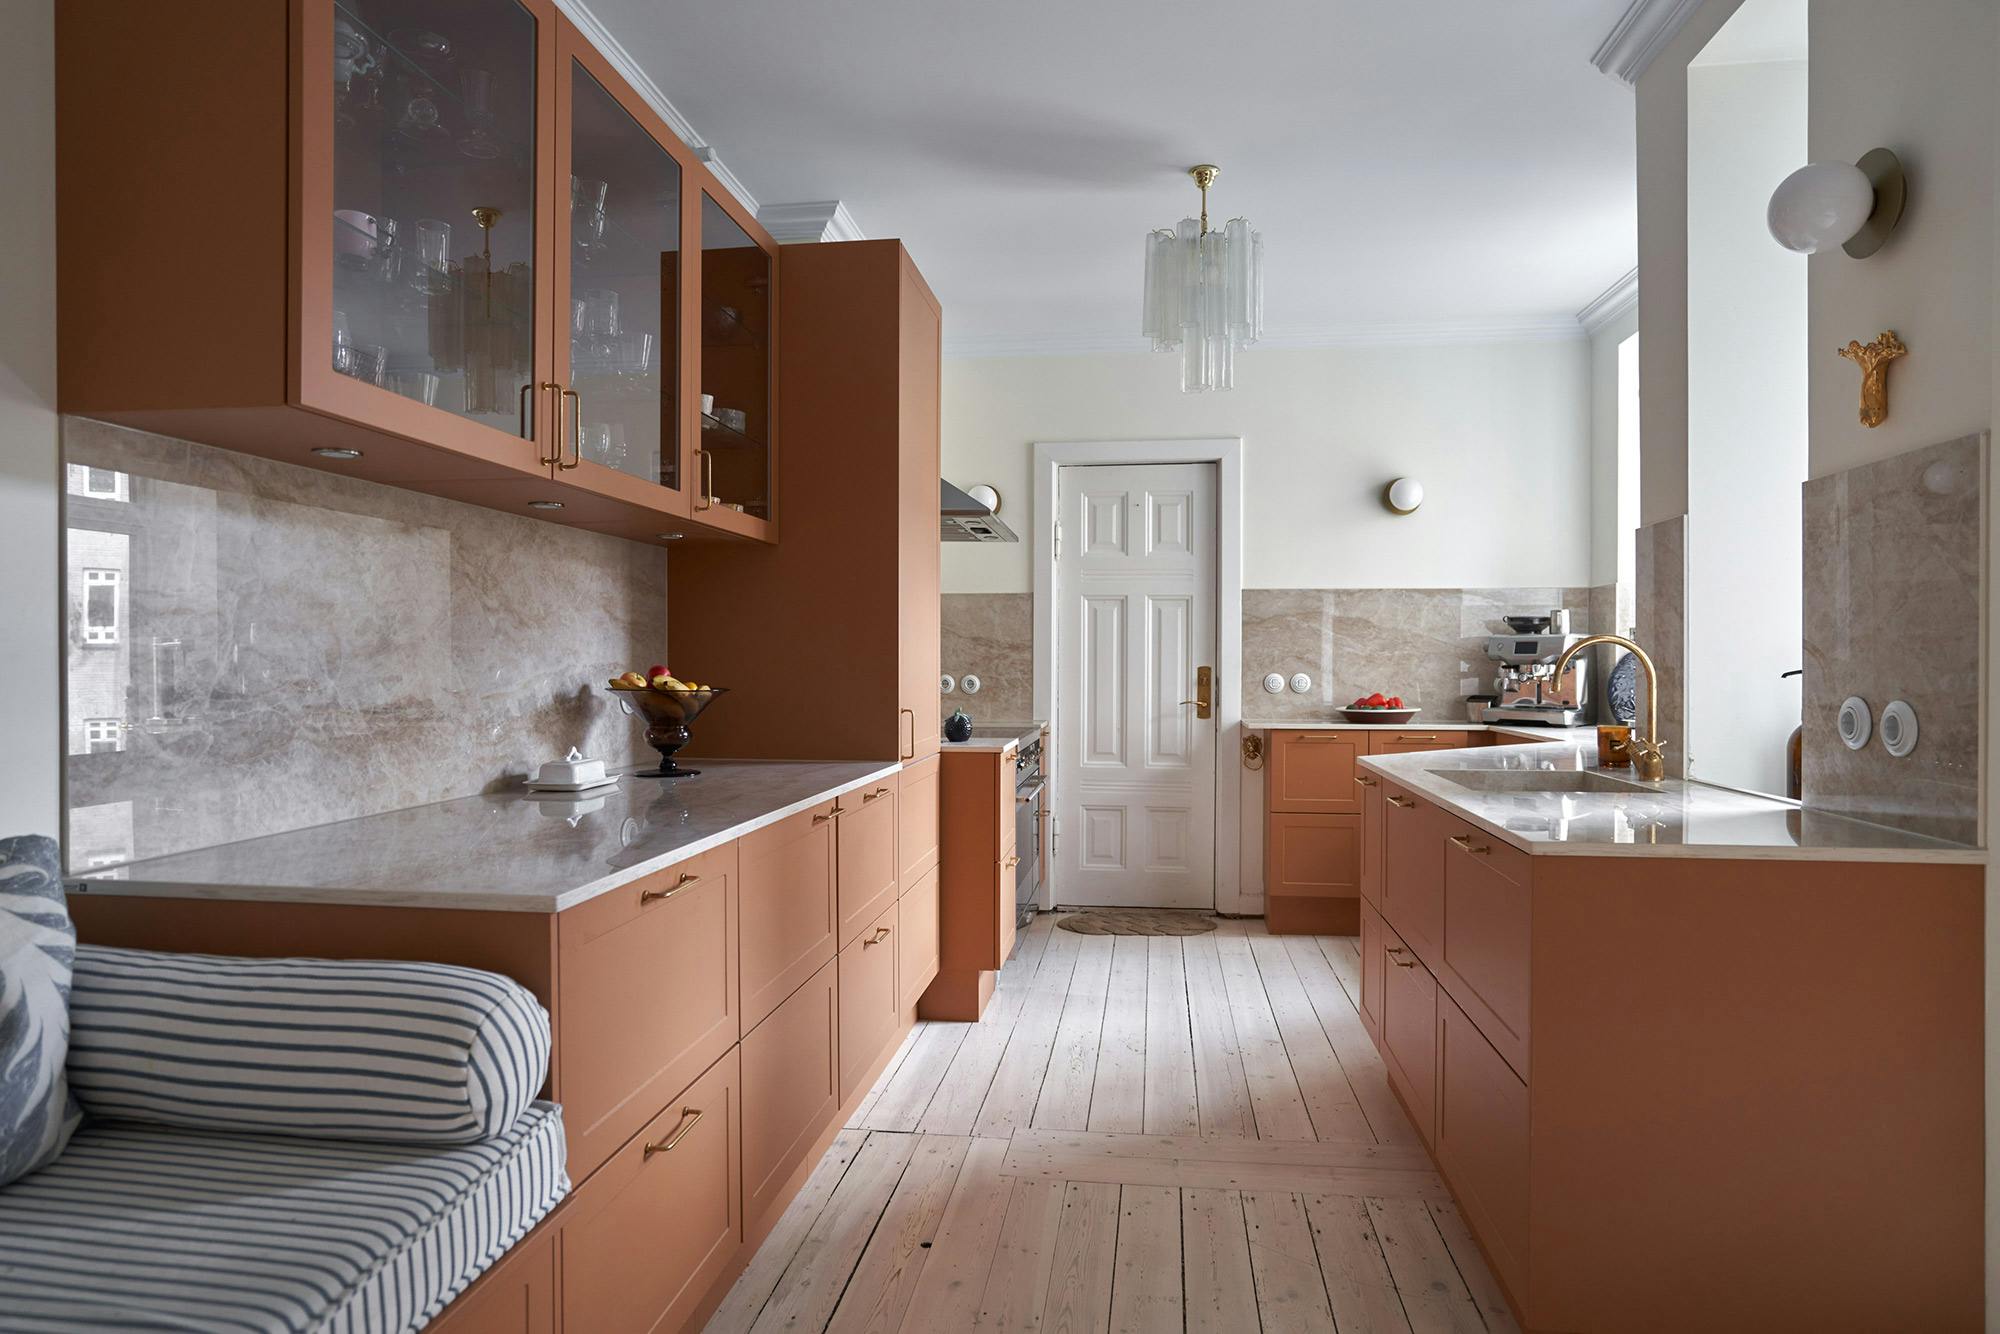 Imagen número 34 de la sección actual de Kitchen Decor Trends -The Uncommon Elegance of Bianco Antico Granite